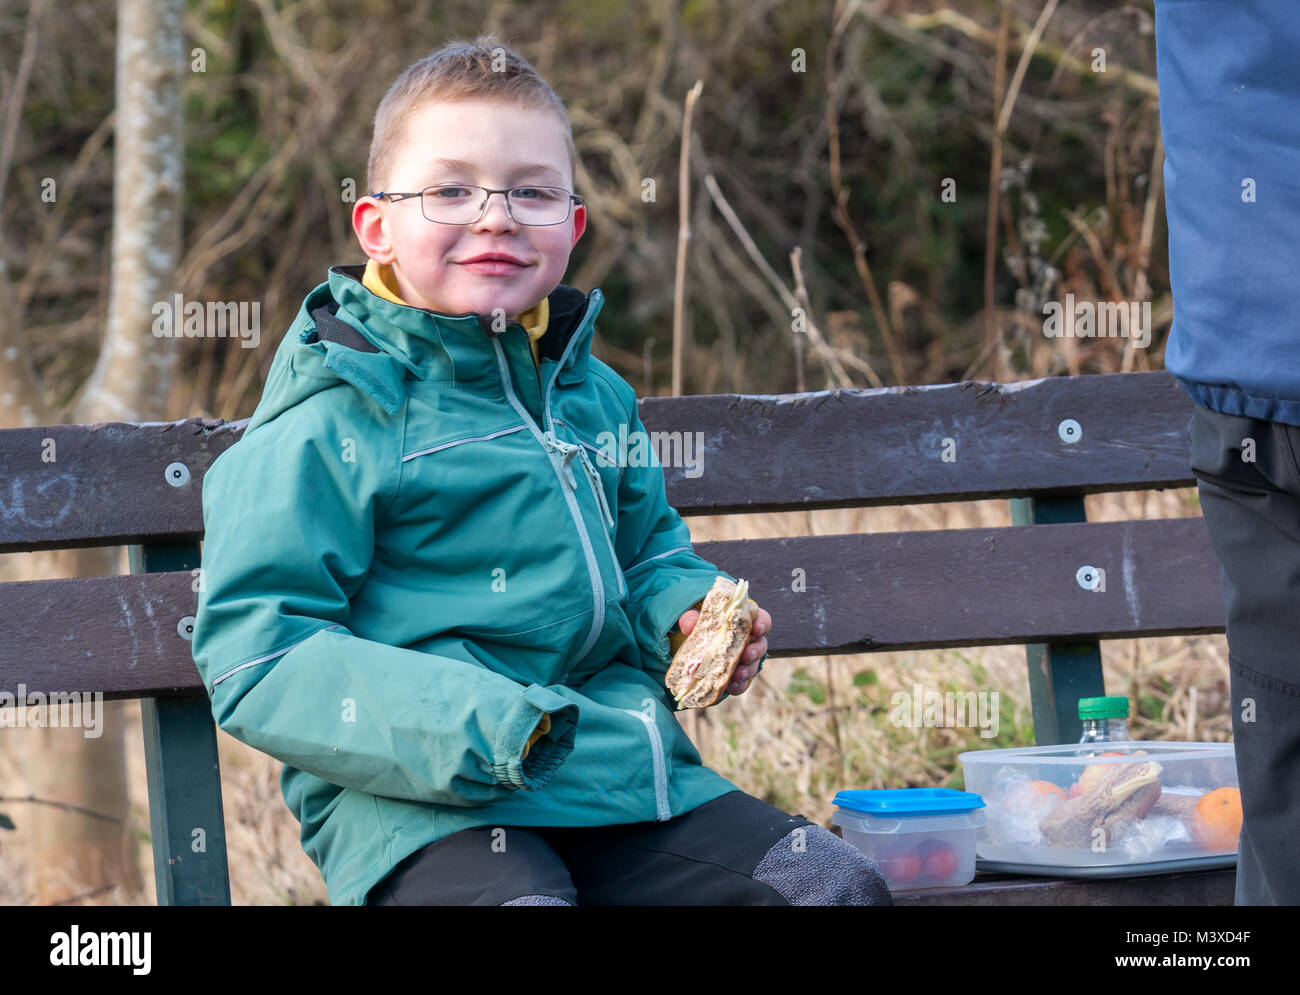 6 Jahr alten lächelnde junge Brille sitzen auf einer Bank bei einem Picknick Mittagessen. Er hält einen Schinken und Käse rollen, im Winter, Schottland, UK Stockfoto